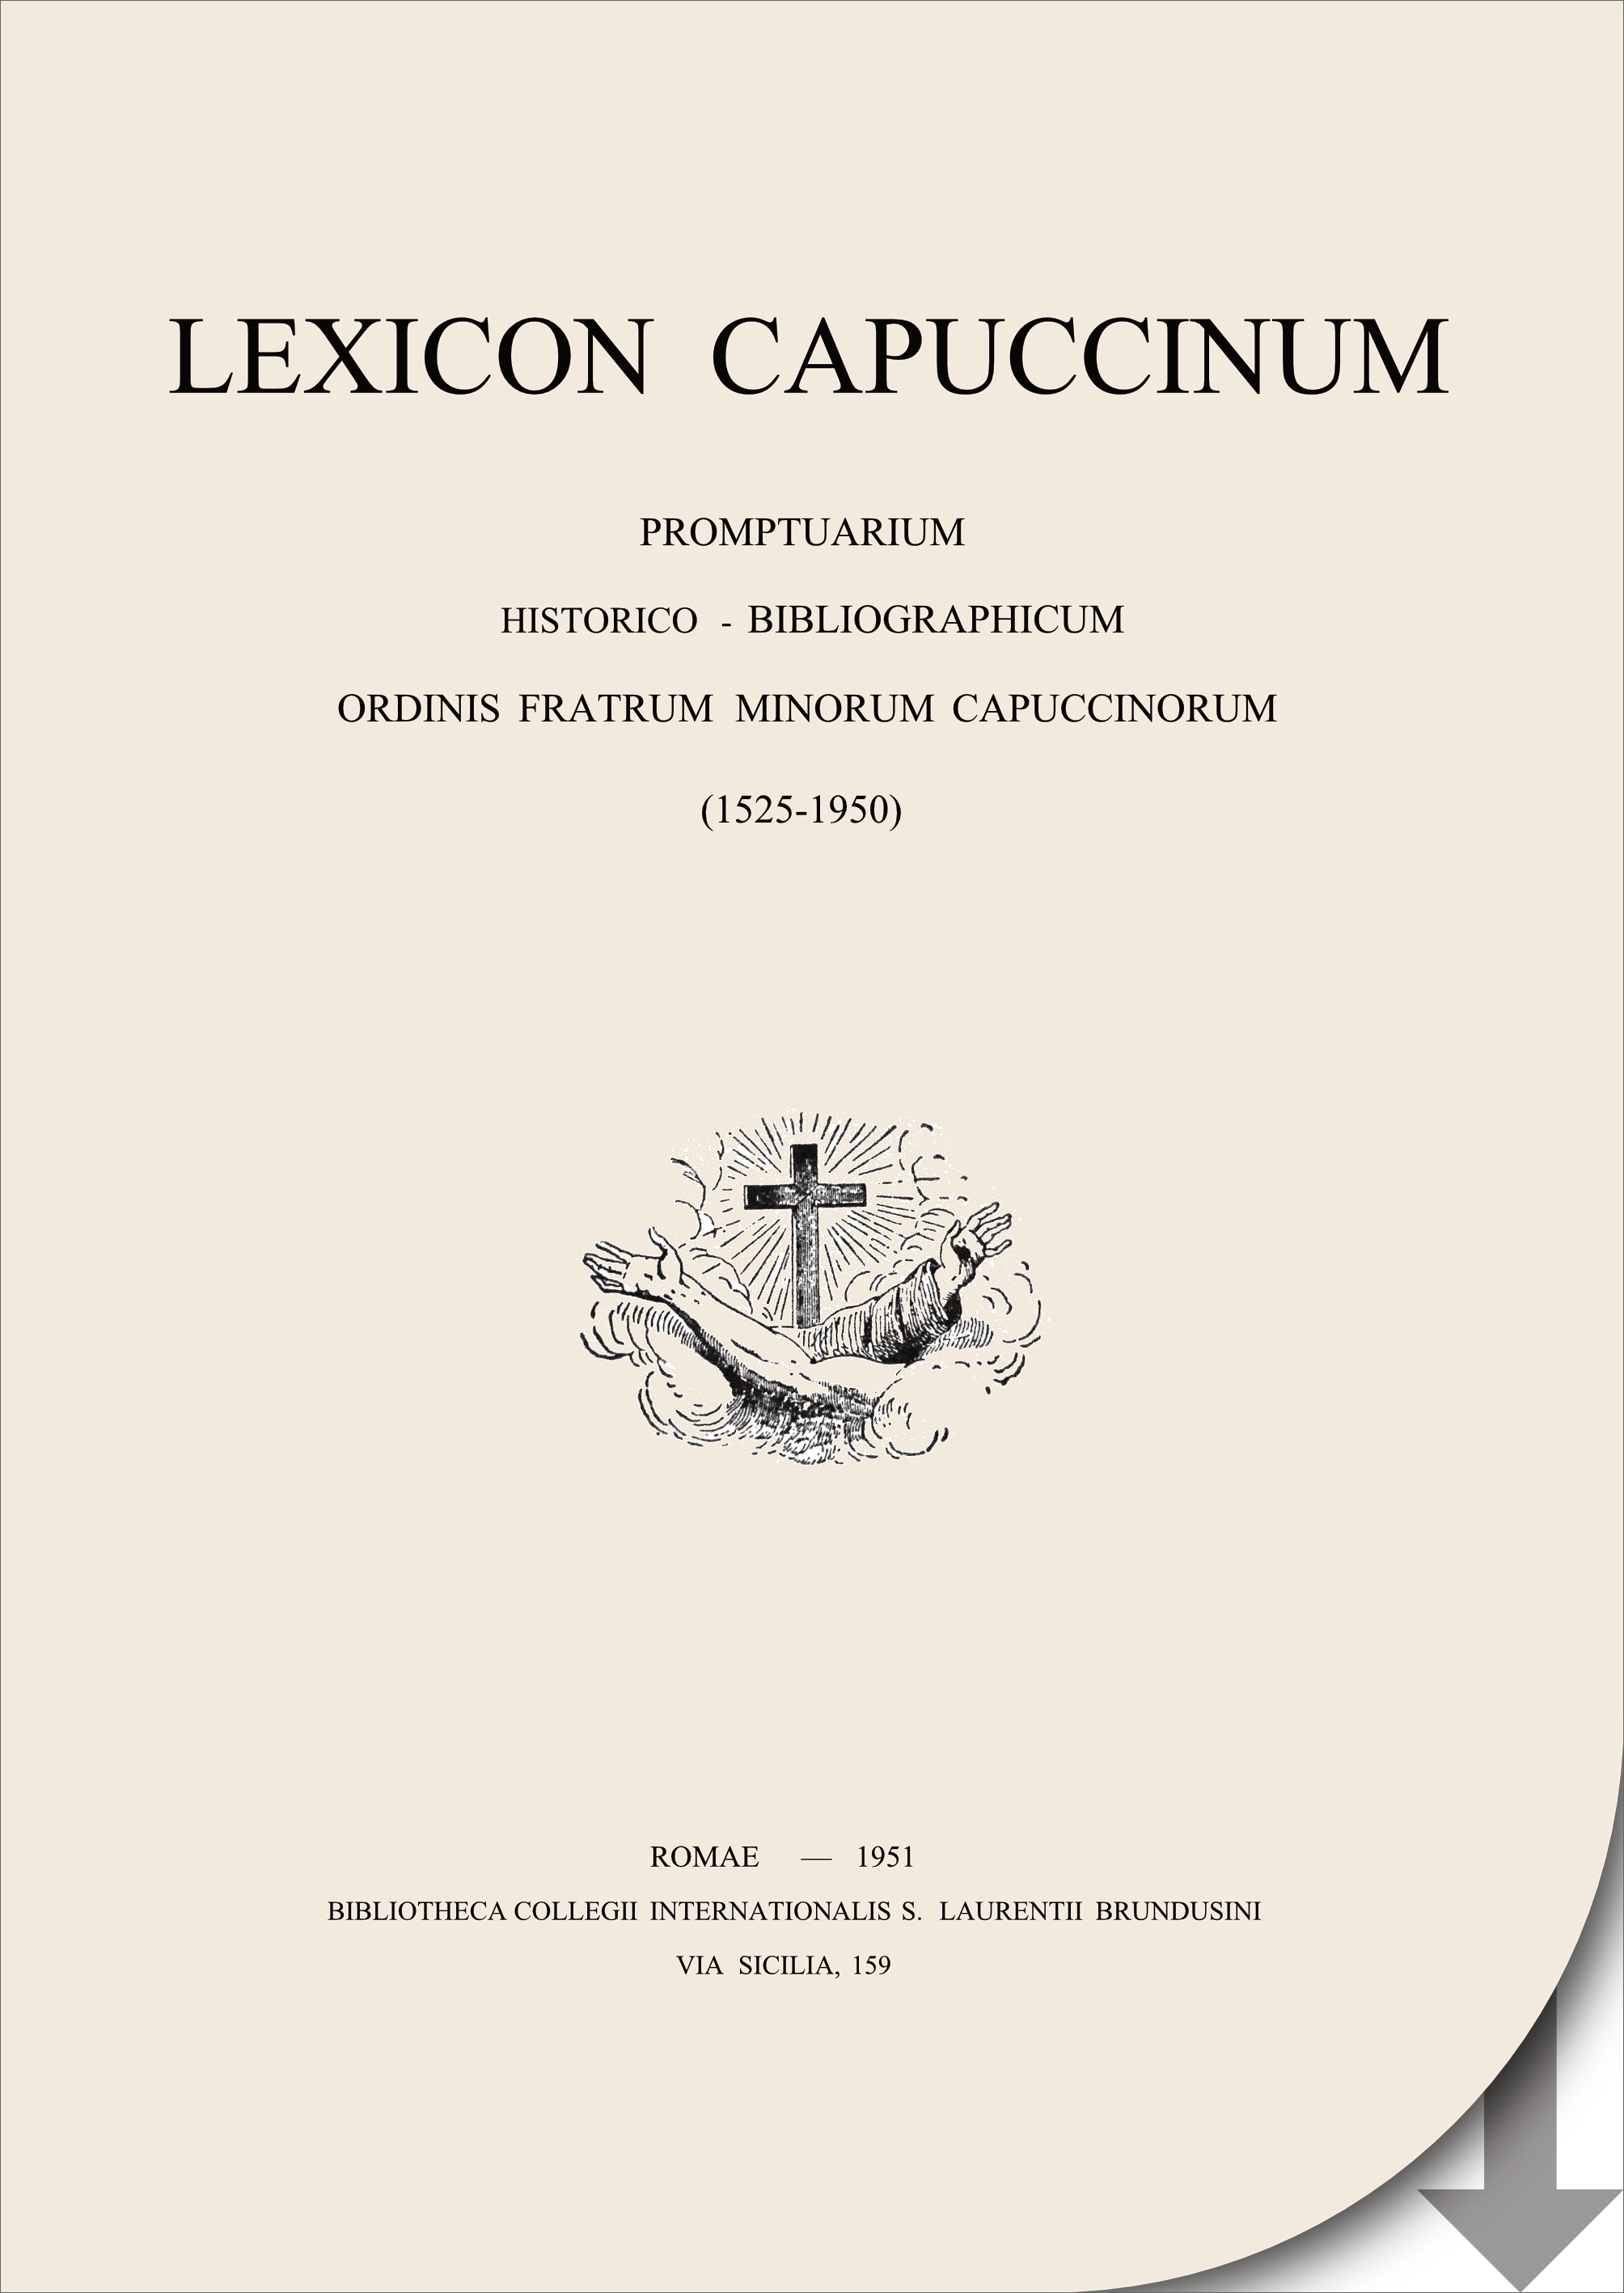 Lexicon copertina